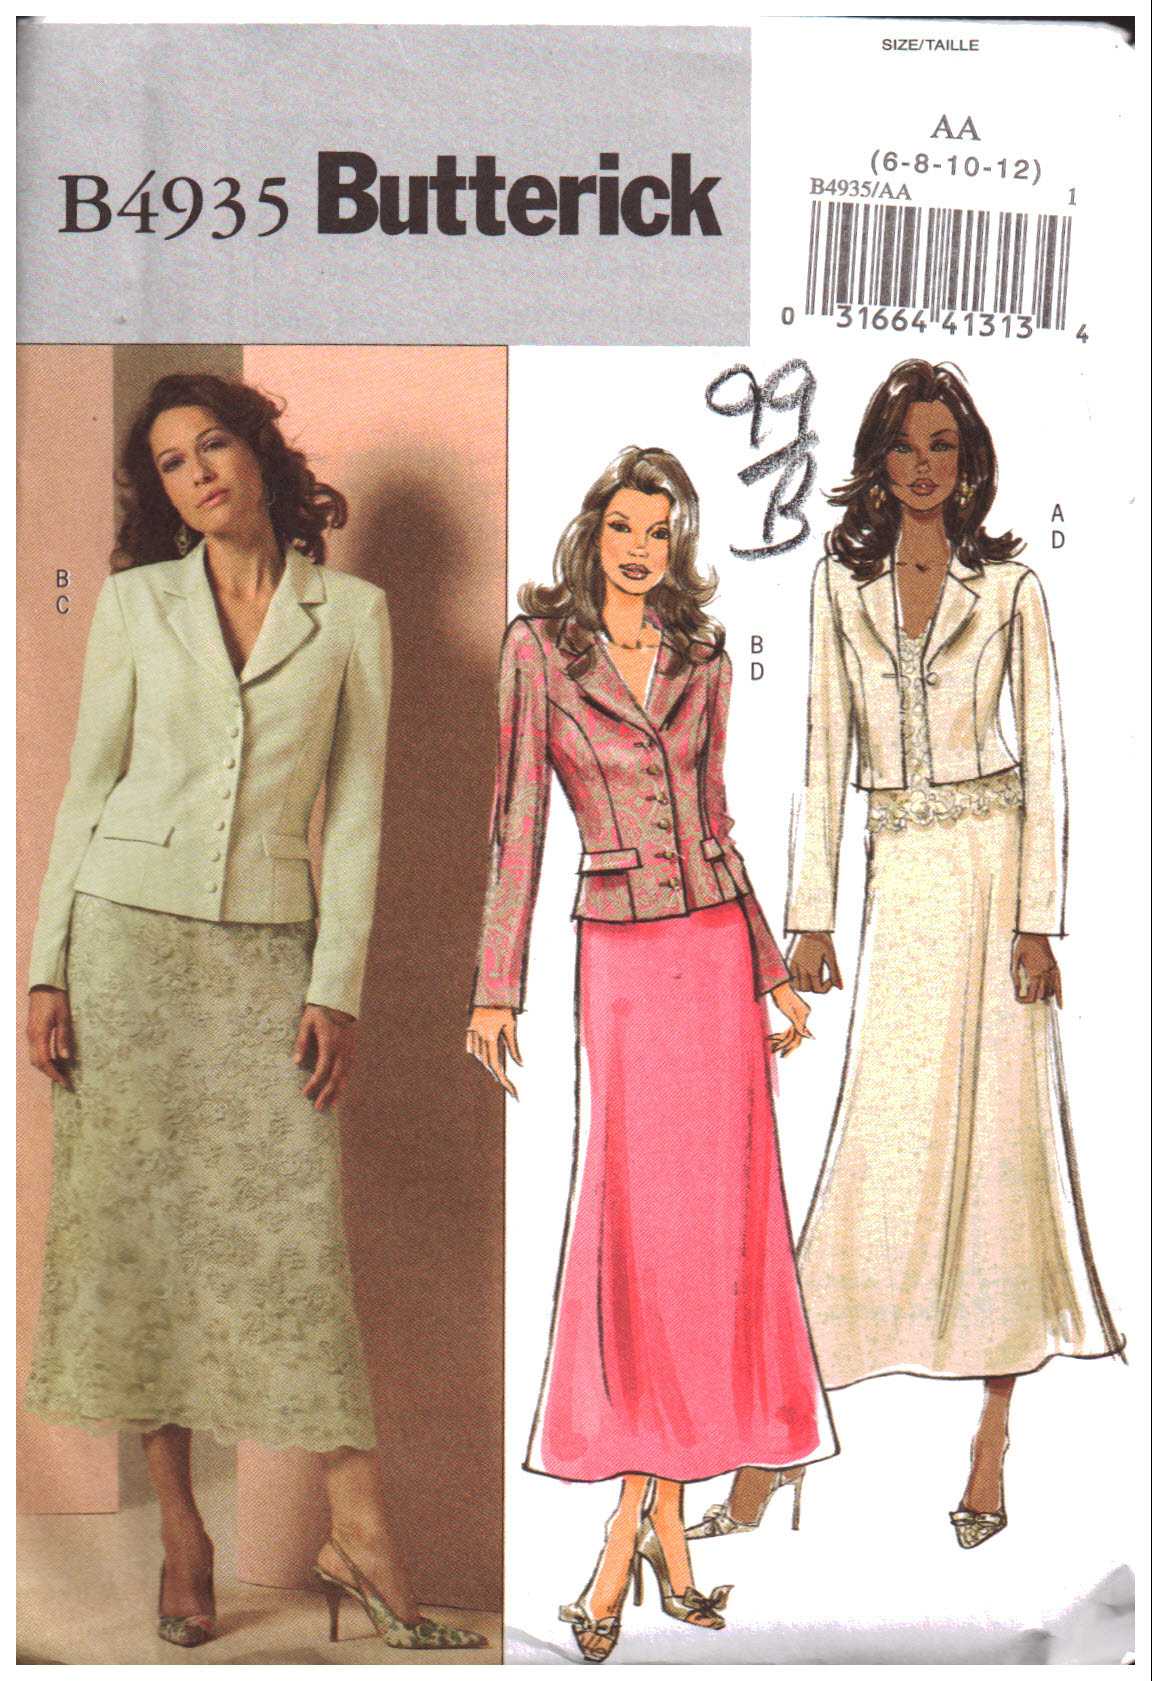 Butterick B4935 Jacket and Skirts Size: AA 6-8-10-12 Uncut Sewing Pattern